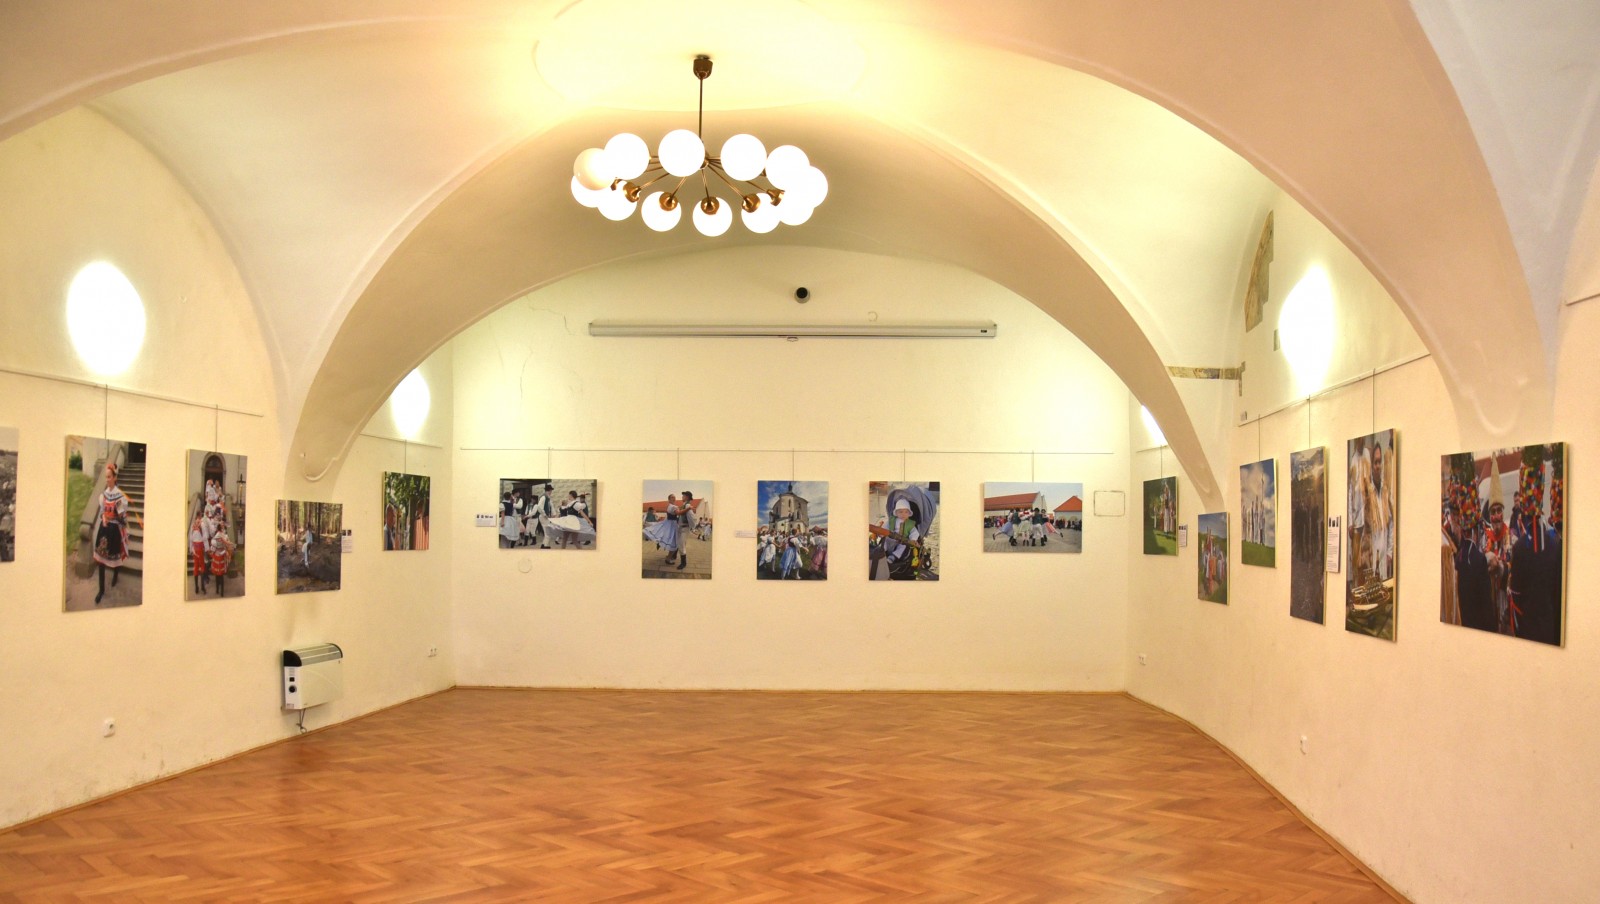 Fotovýstava "Výroční obyčeje česko-rakouského příhraničí" aktuálně ve Znojmě!